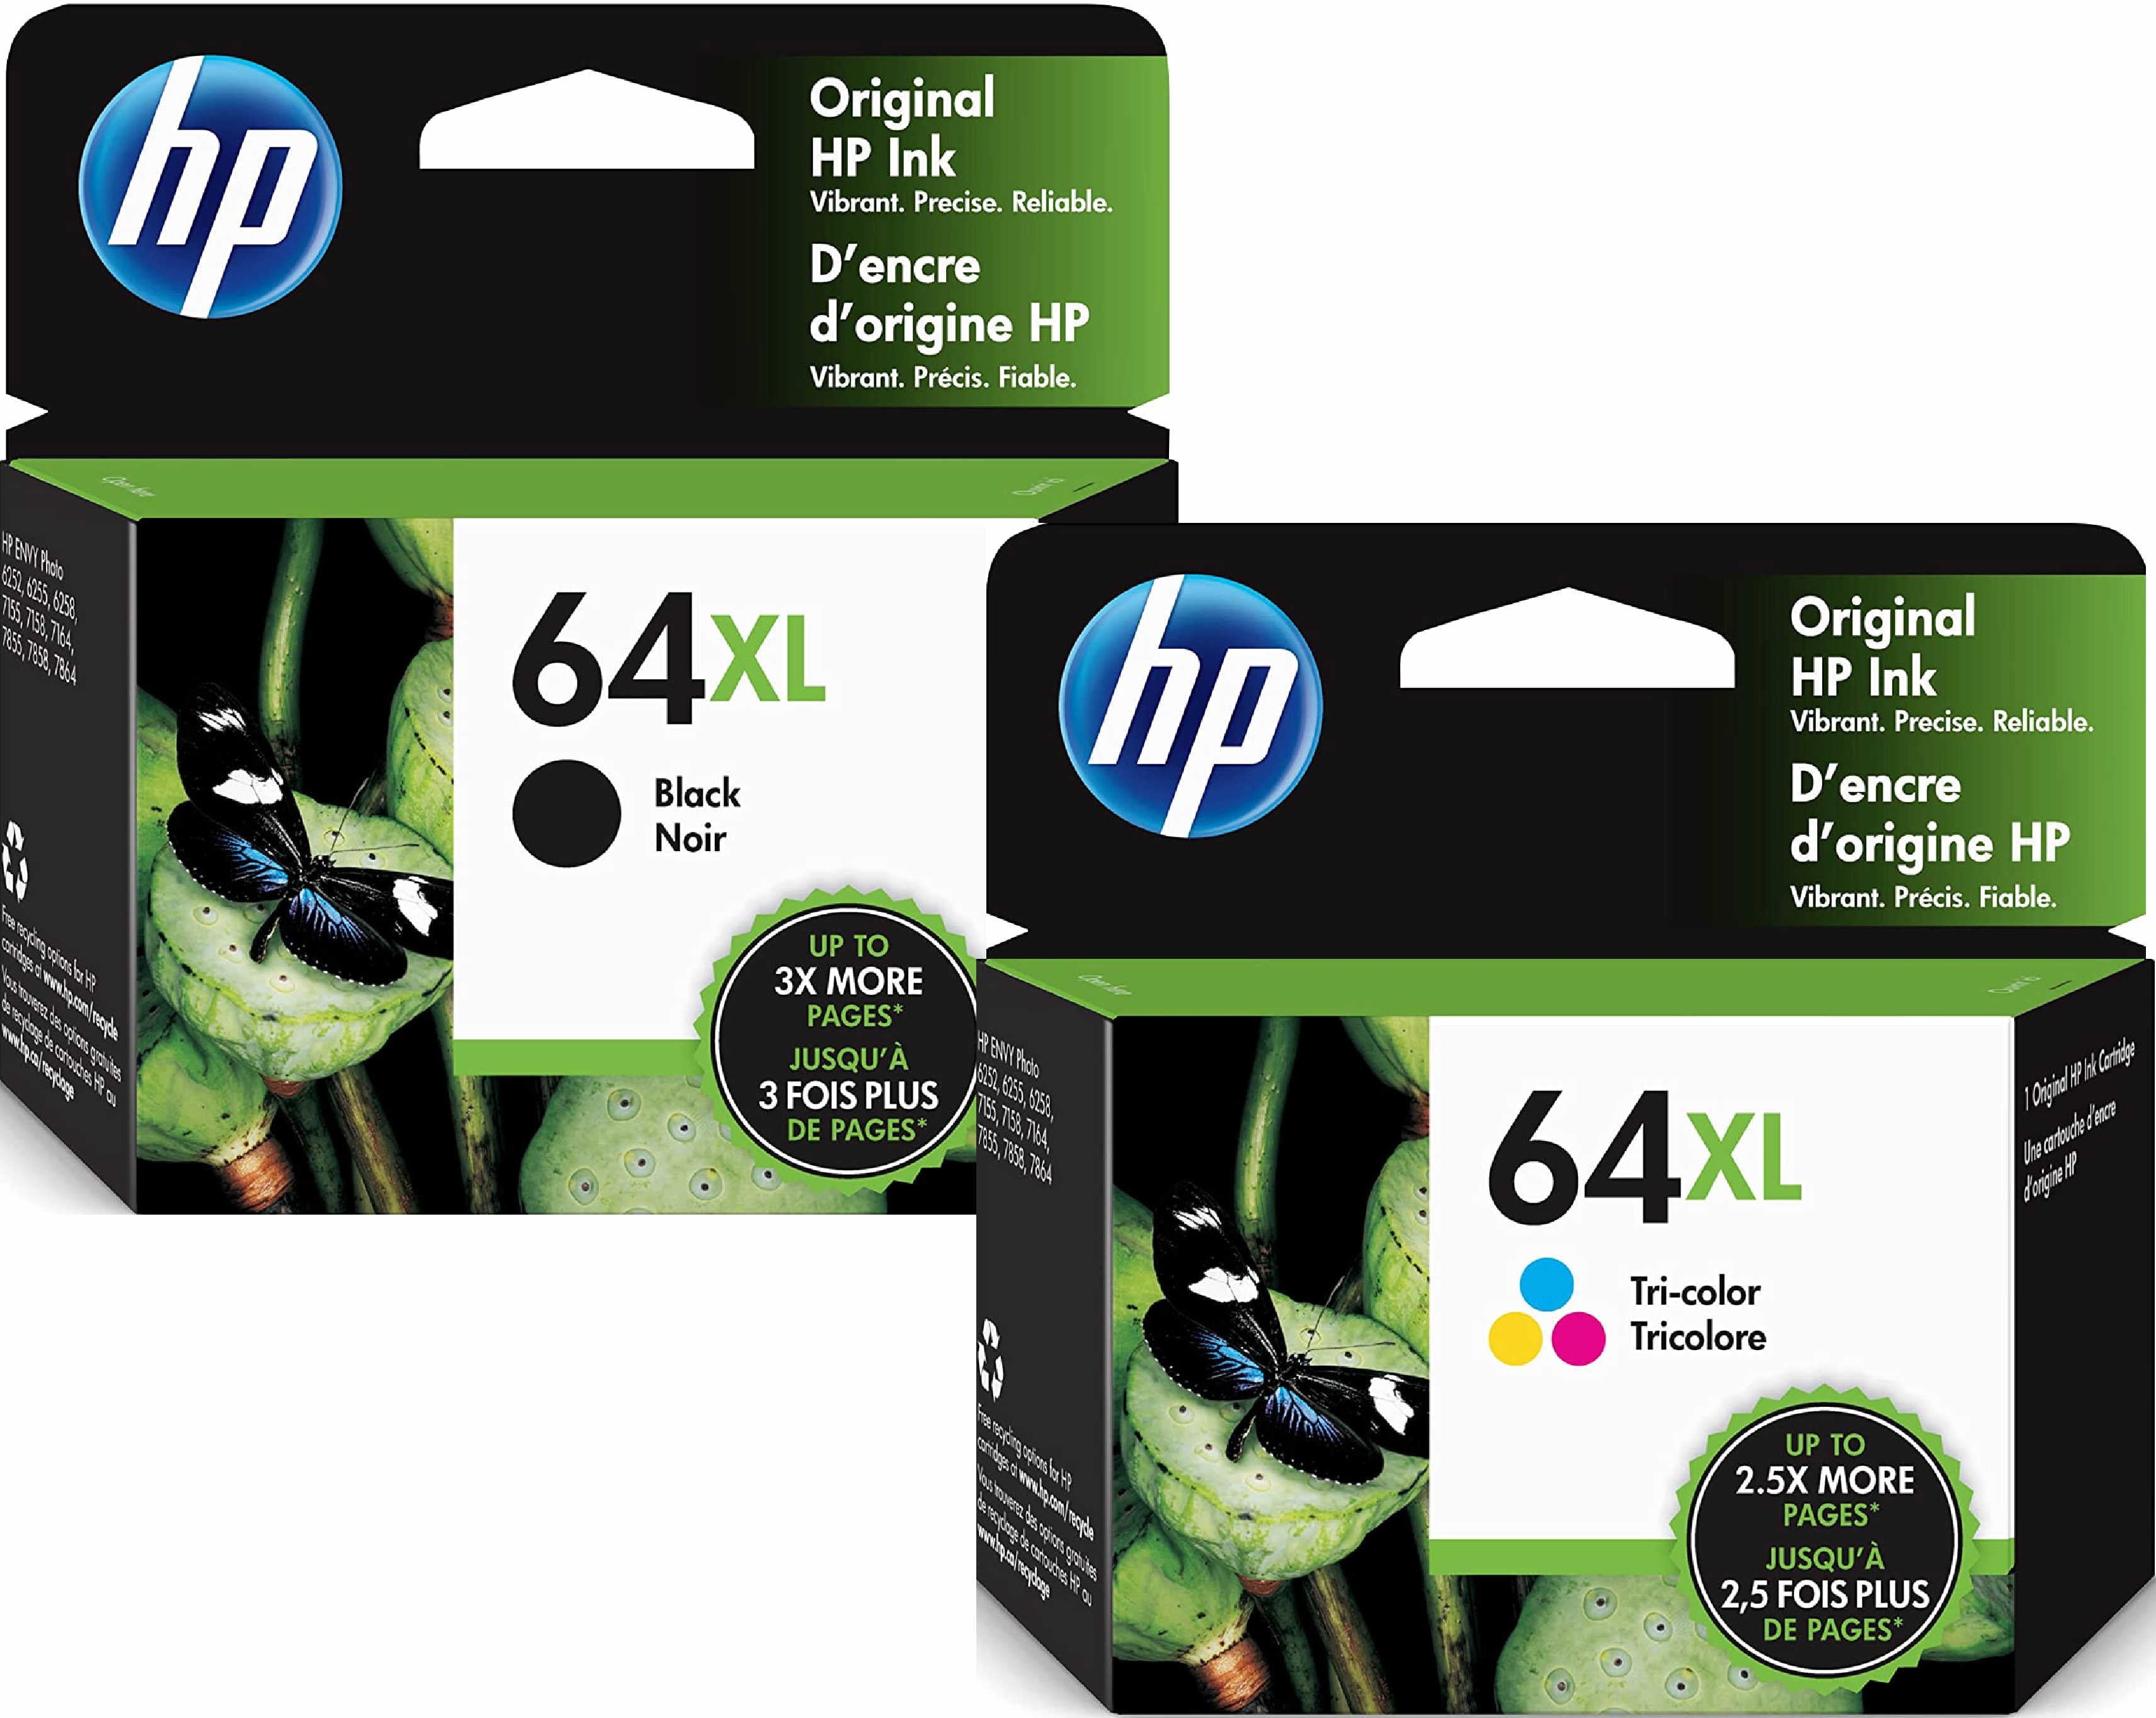 HP 903 Ink Cartridge 1 Set, Black T6L99A, Cyan T6L87A, Magenta T6L91A